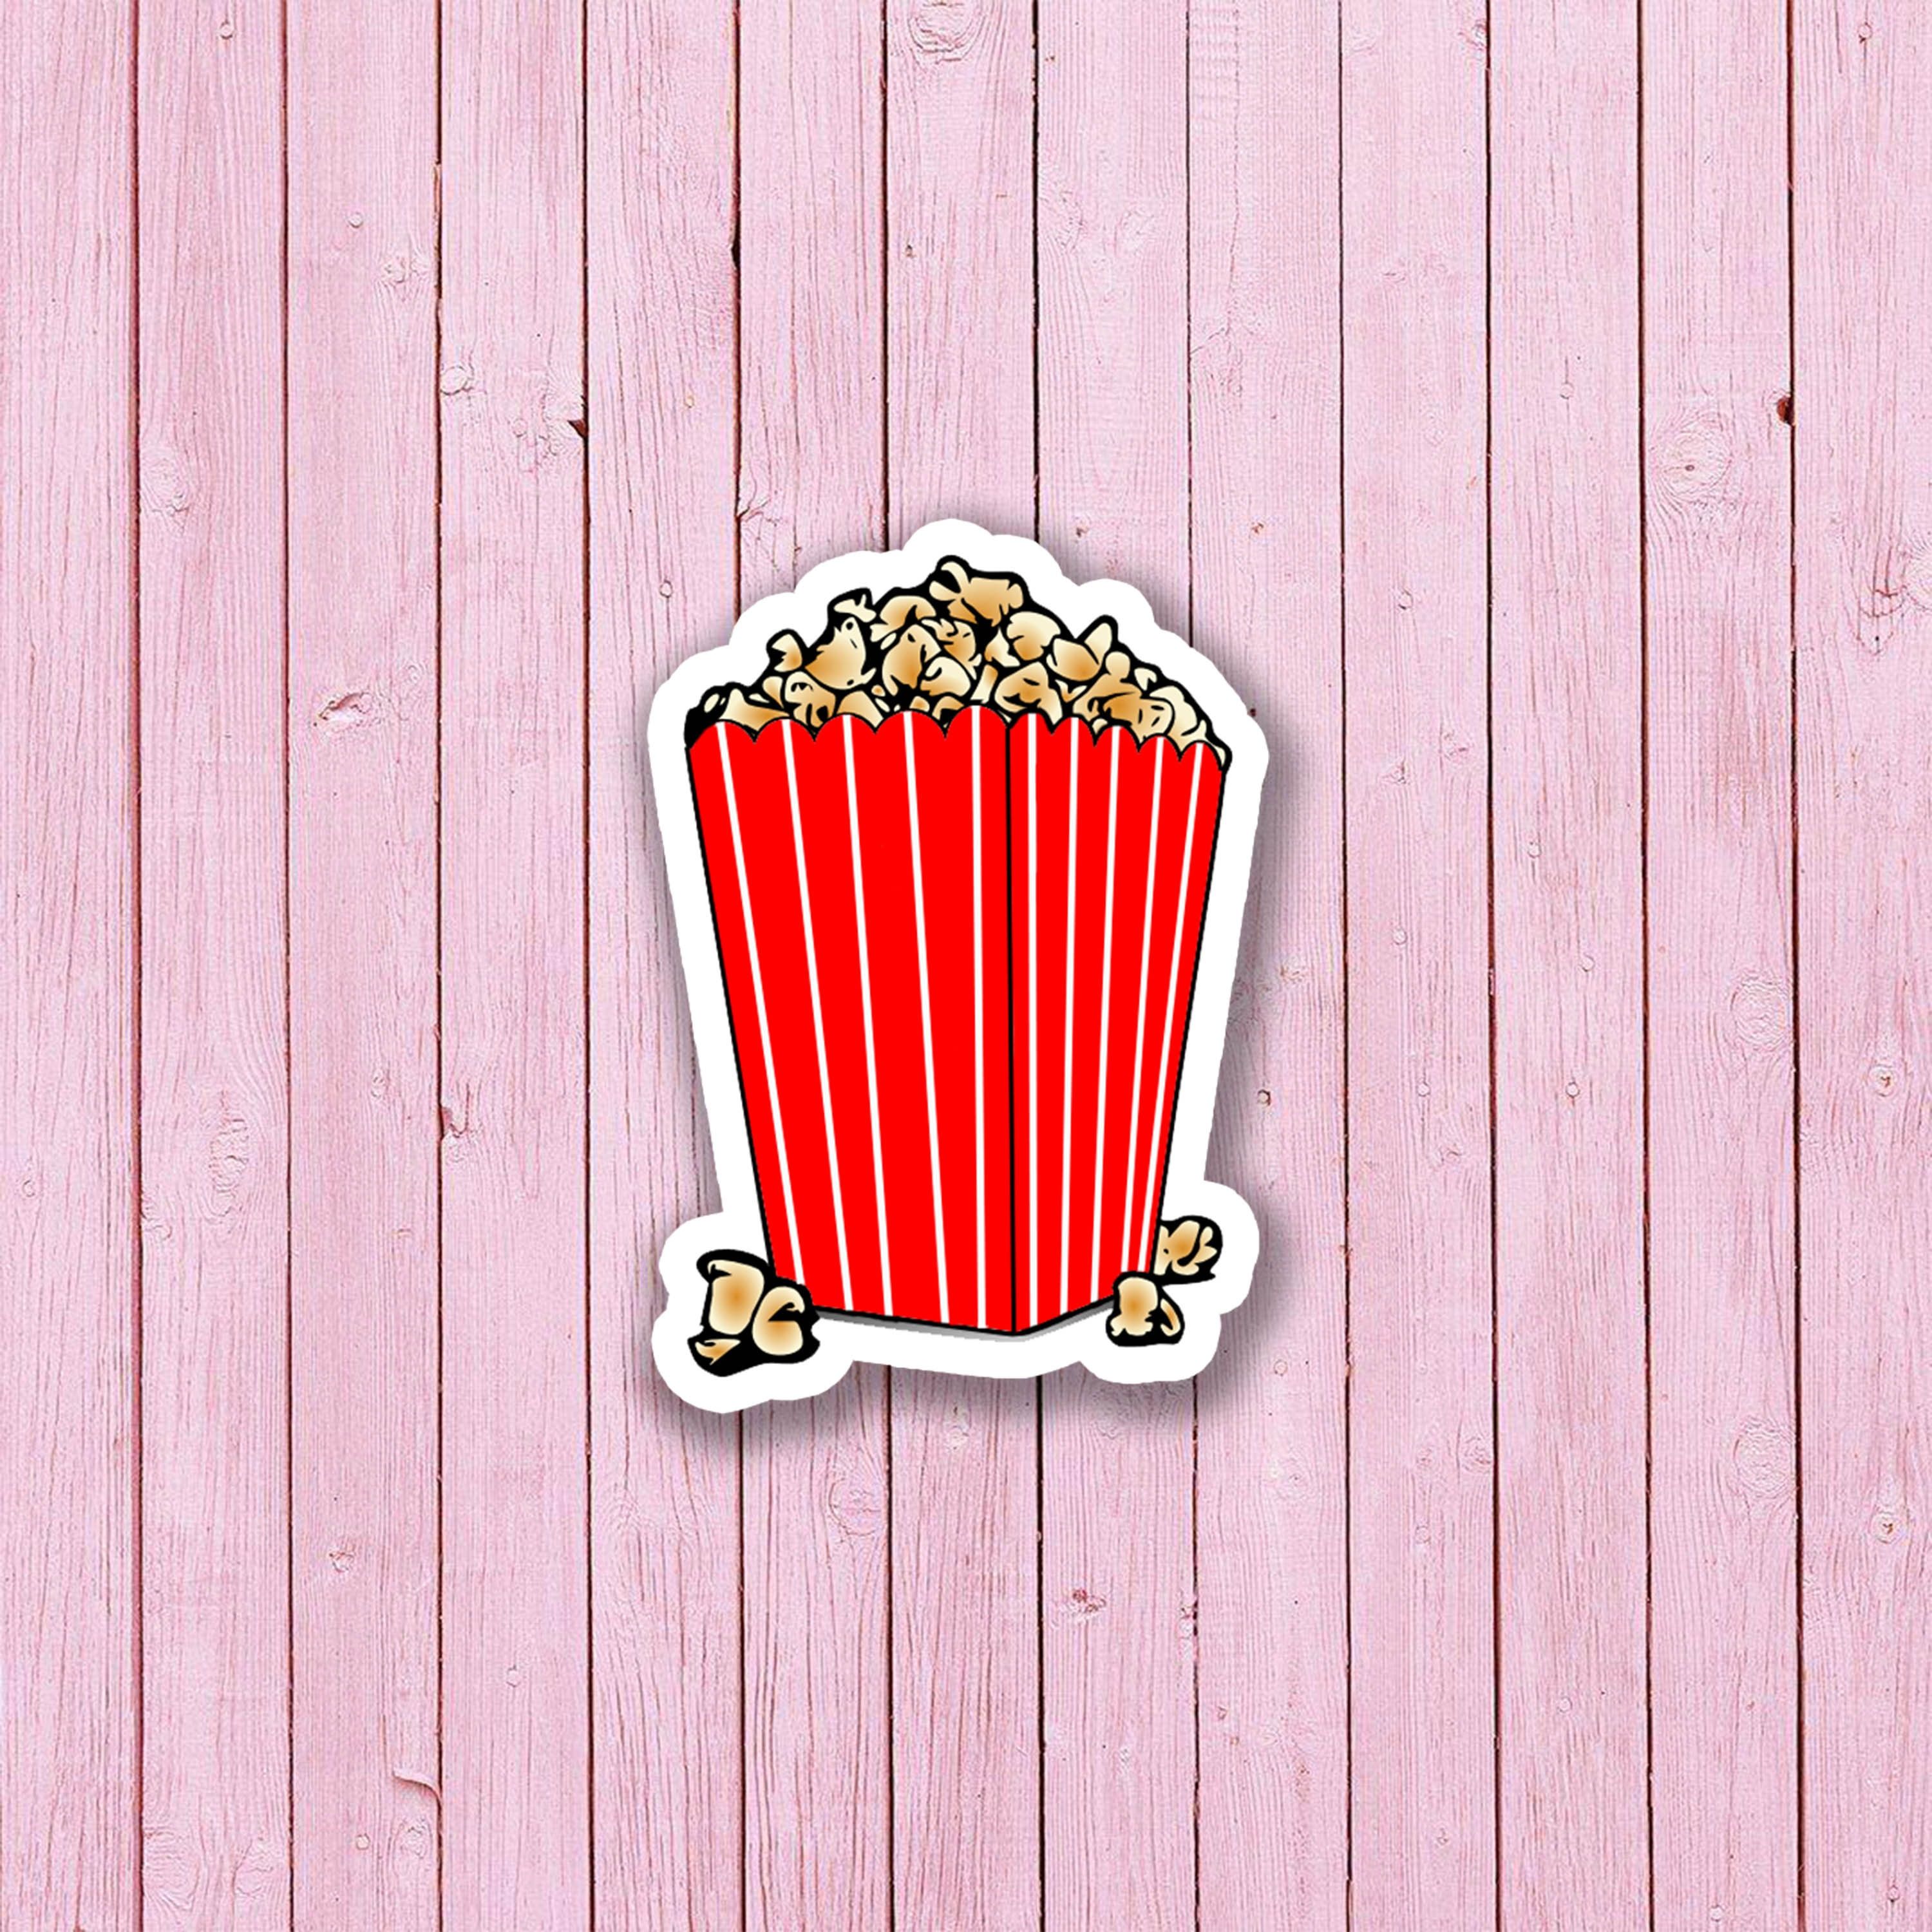 A sticker of popcorn in an open box - Popcorn